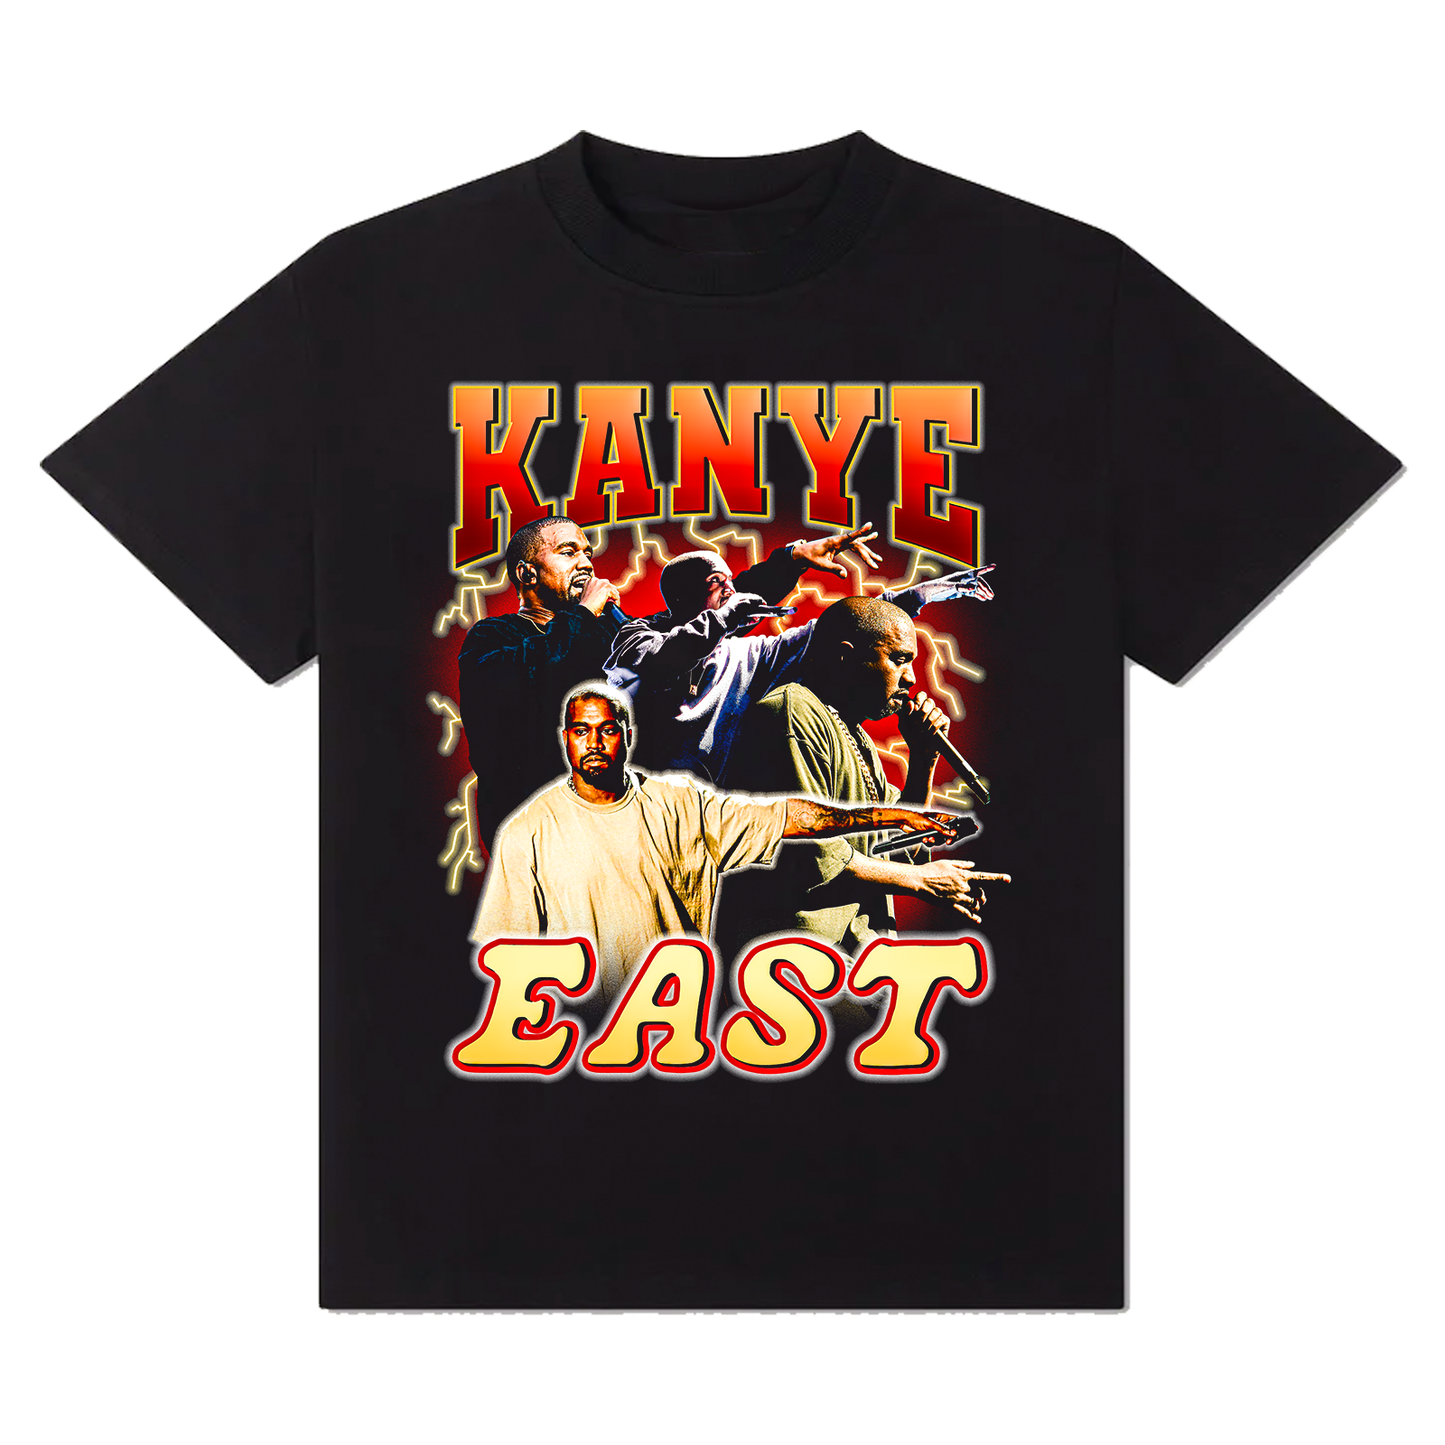 Kanye East T-Shirt!